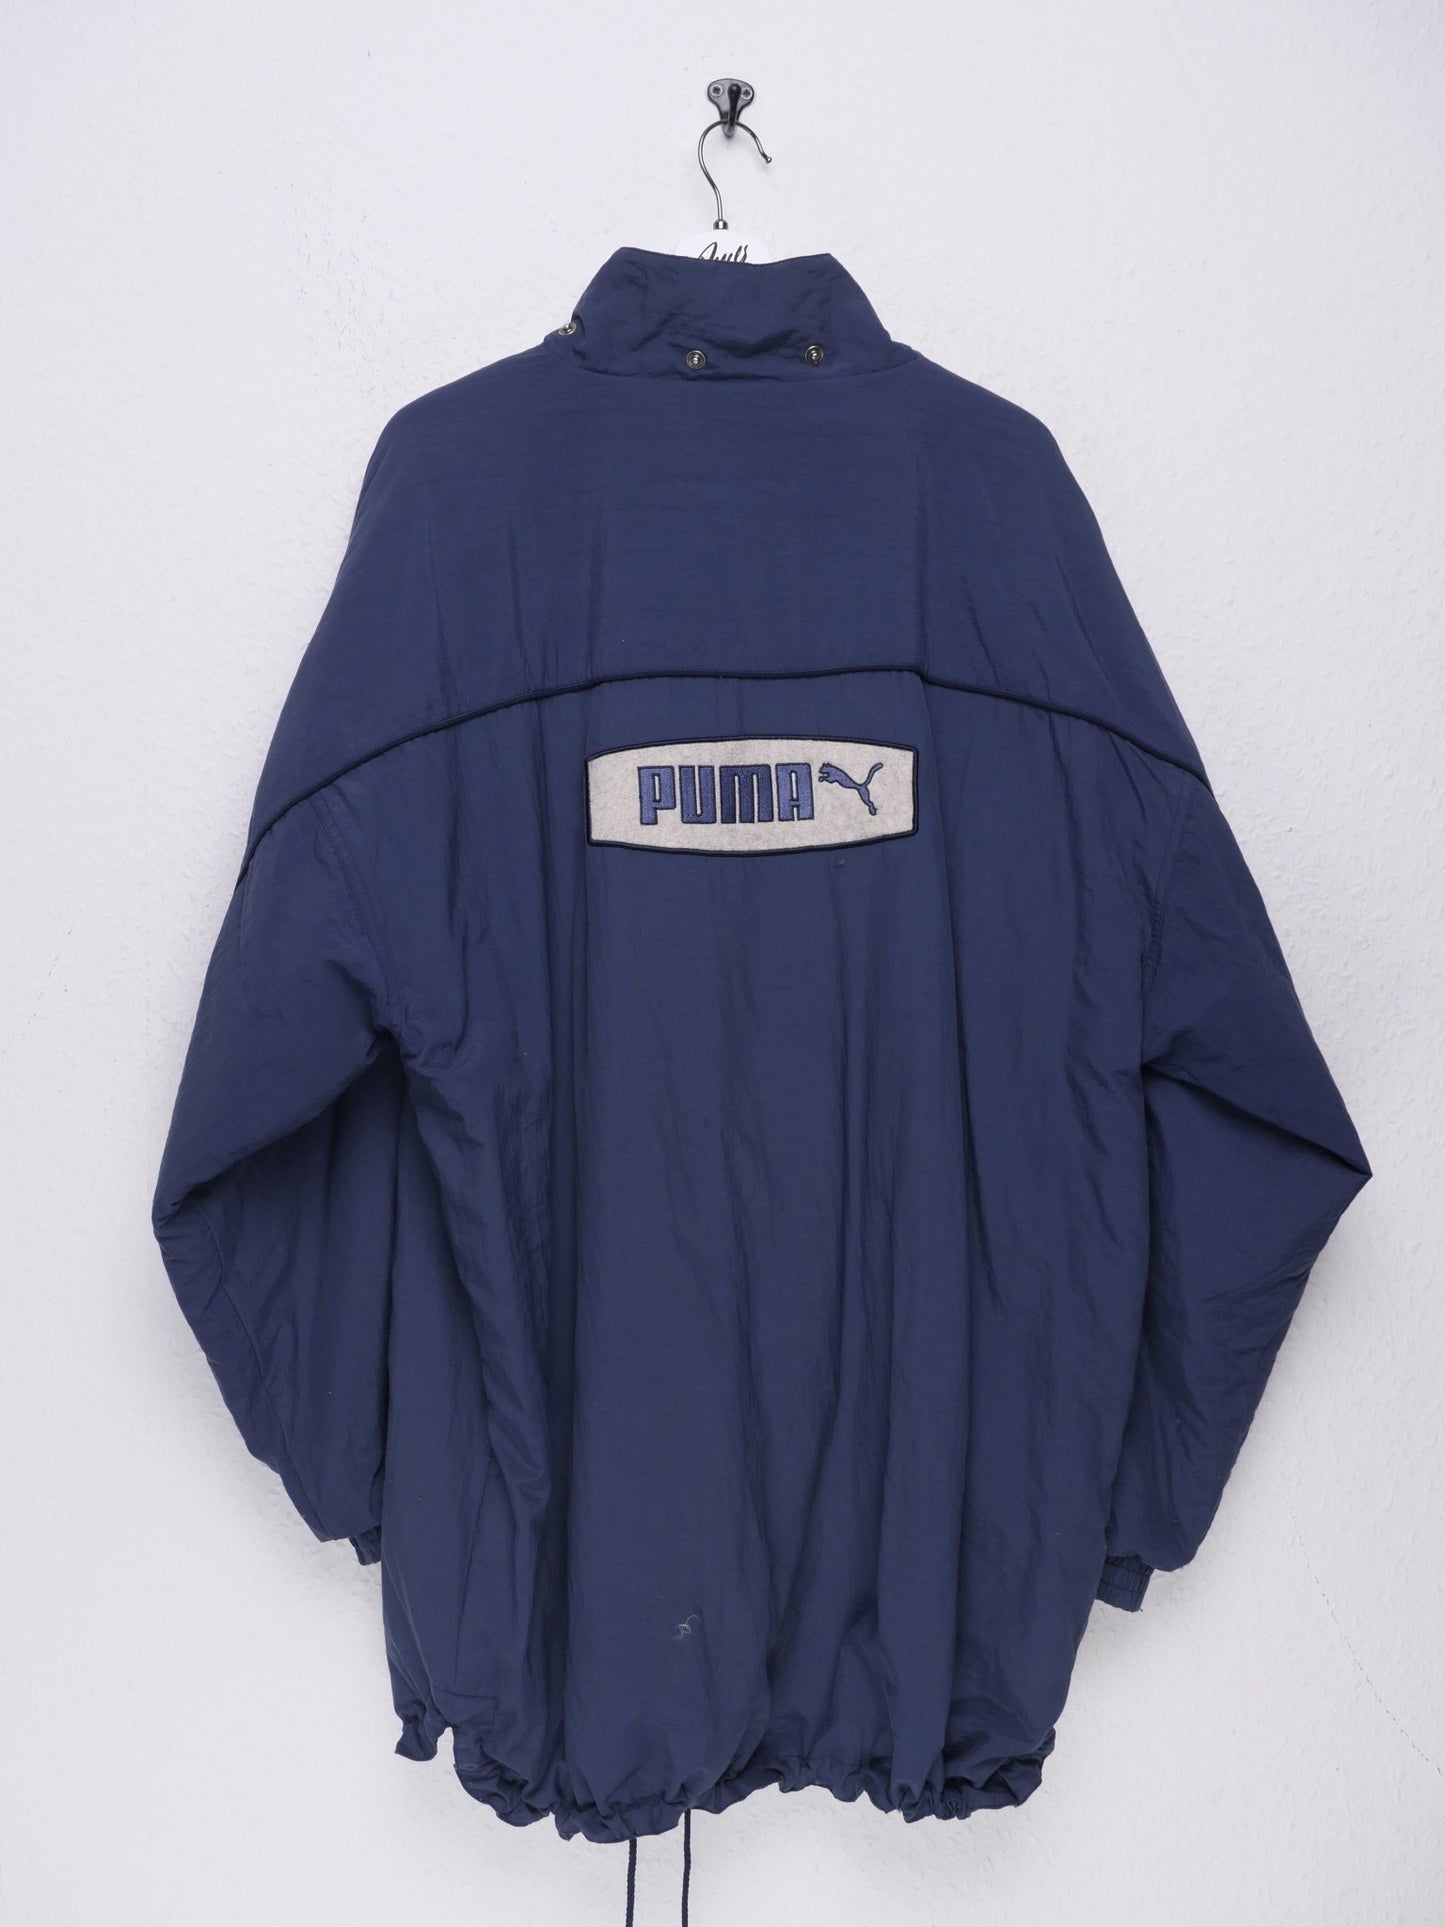 Puma embroidered Logo Vintage Heavy Track Jacket - Peeces